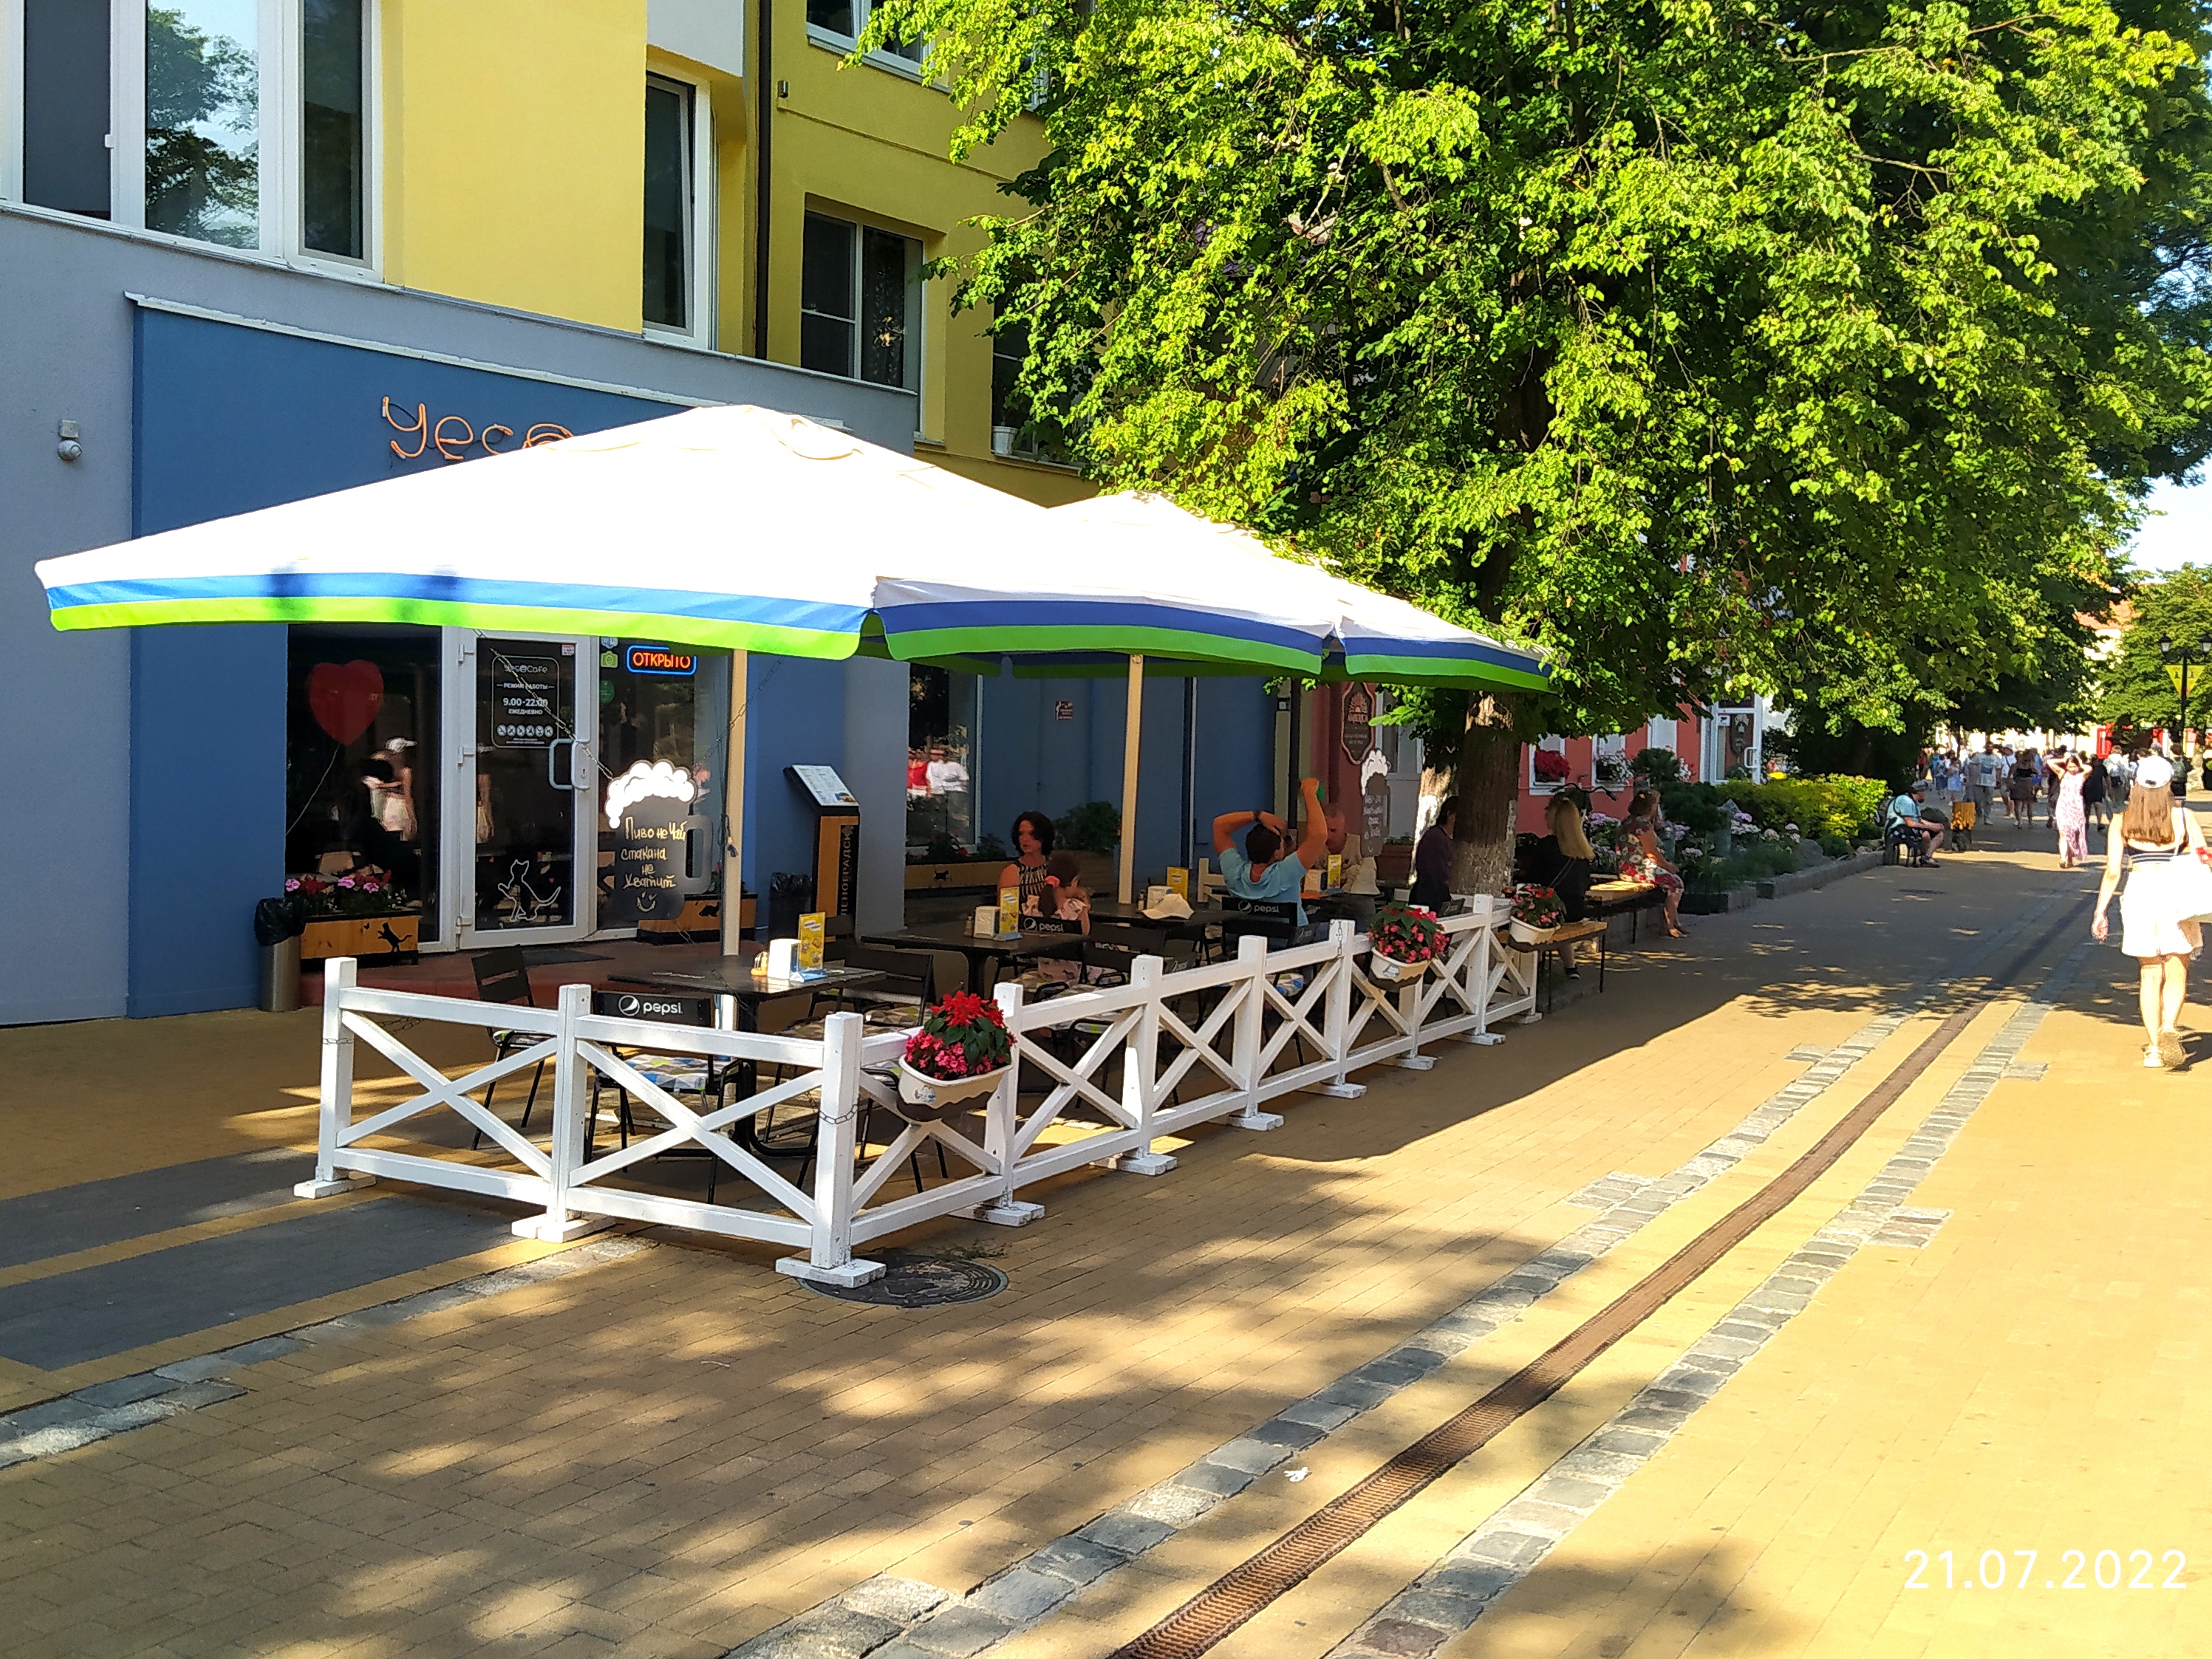 К внешнему облику некоторых летних площадок кафе в Зеленоградске у администрации округа есть претензии